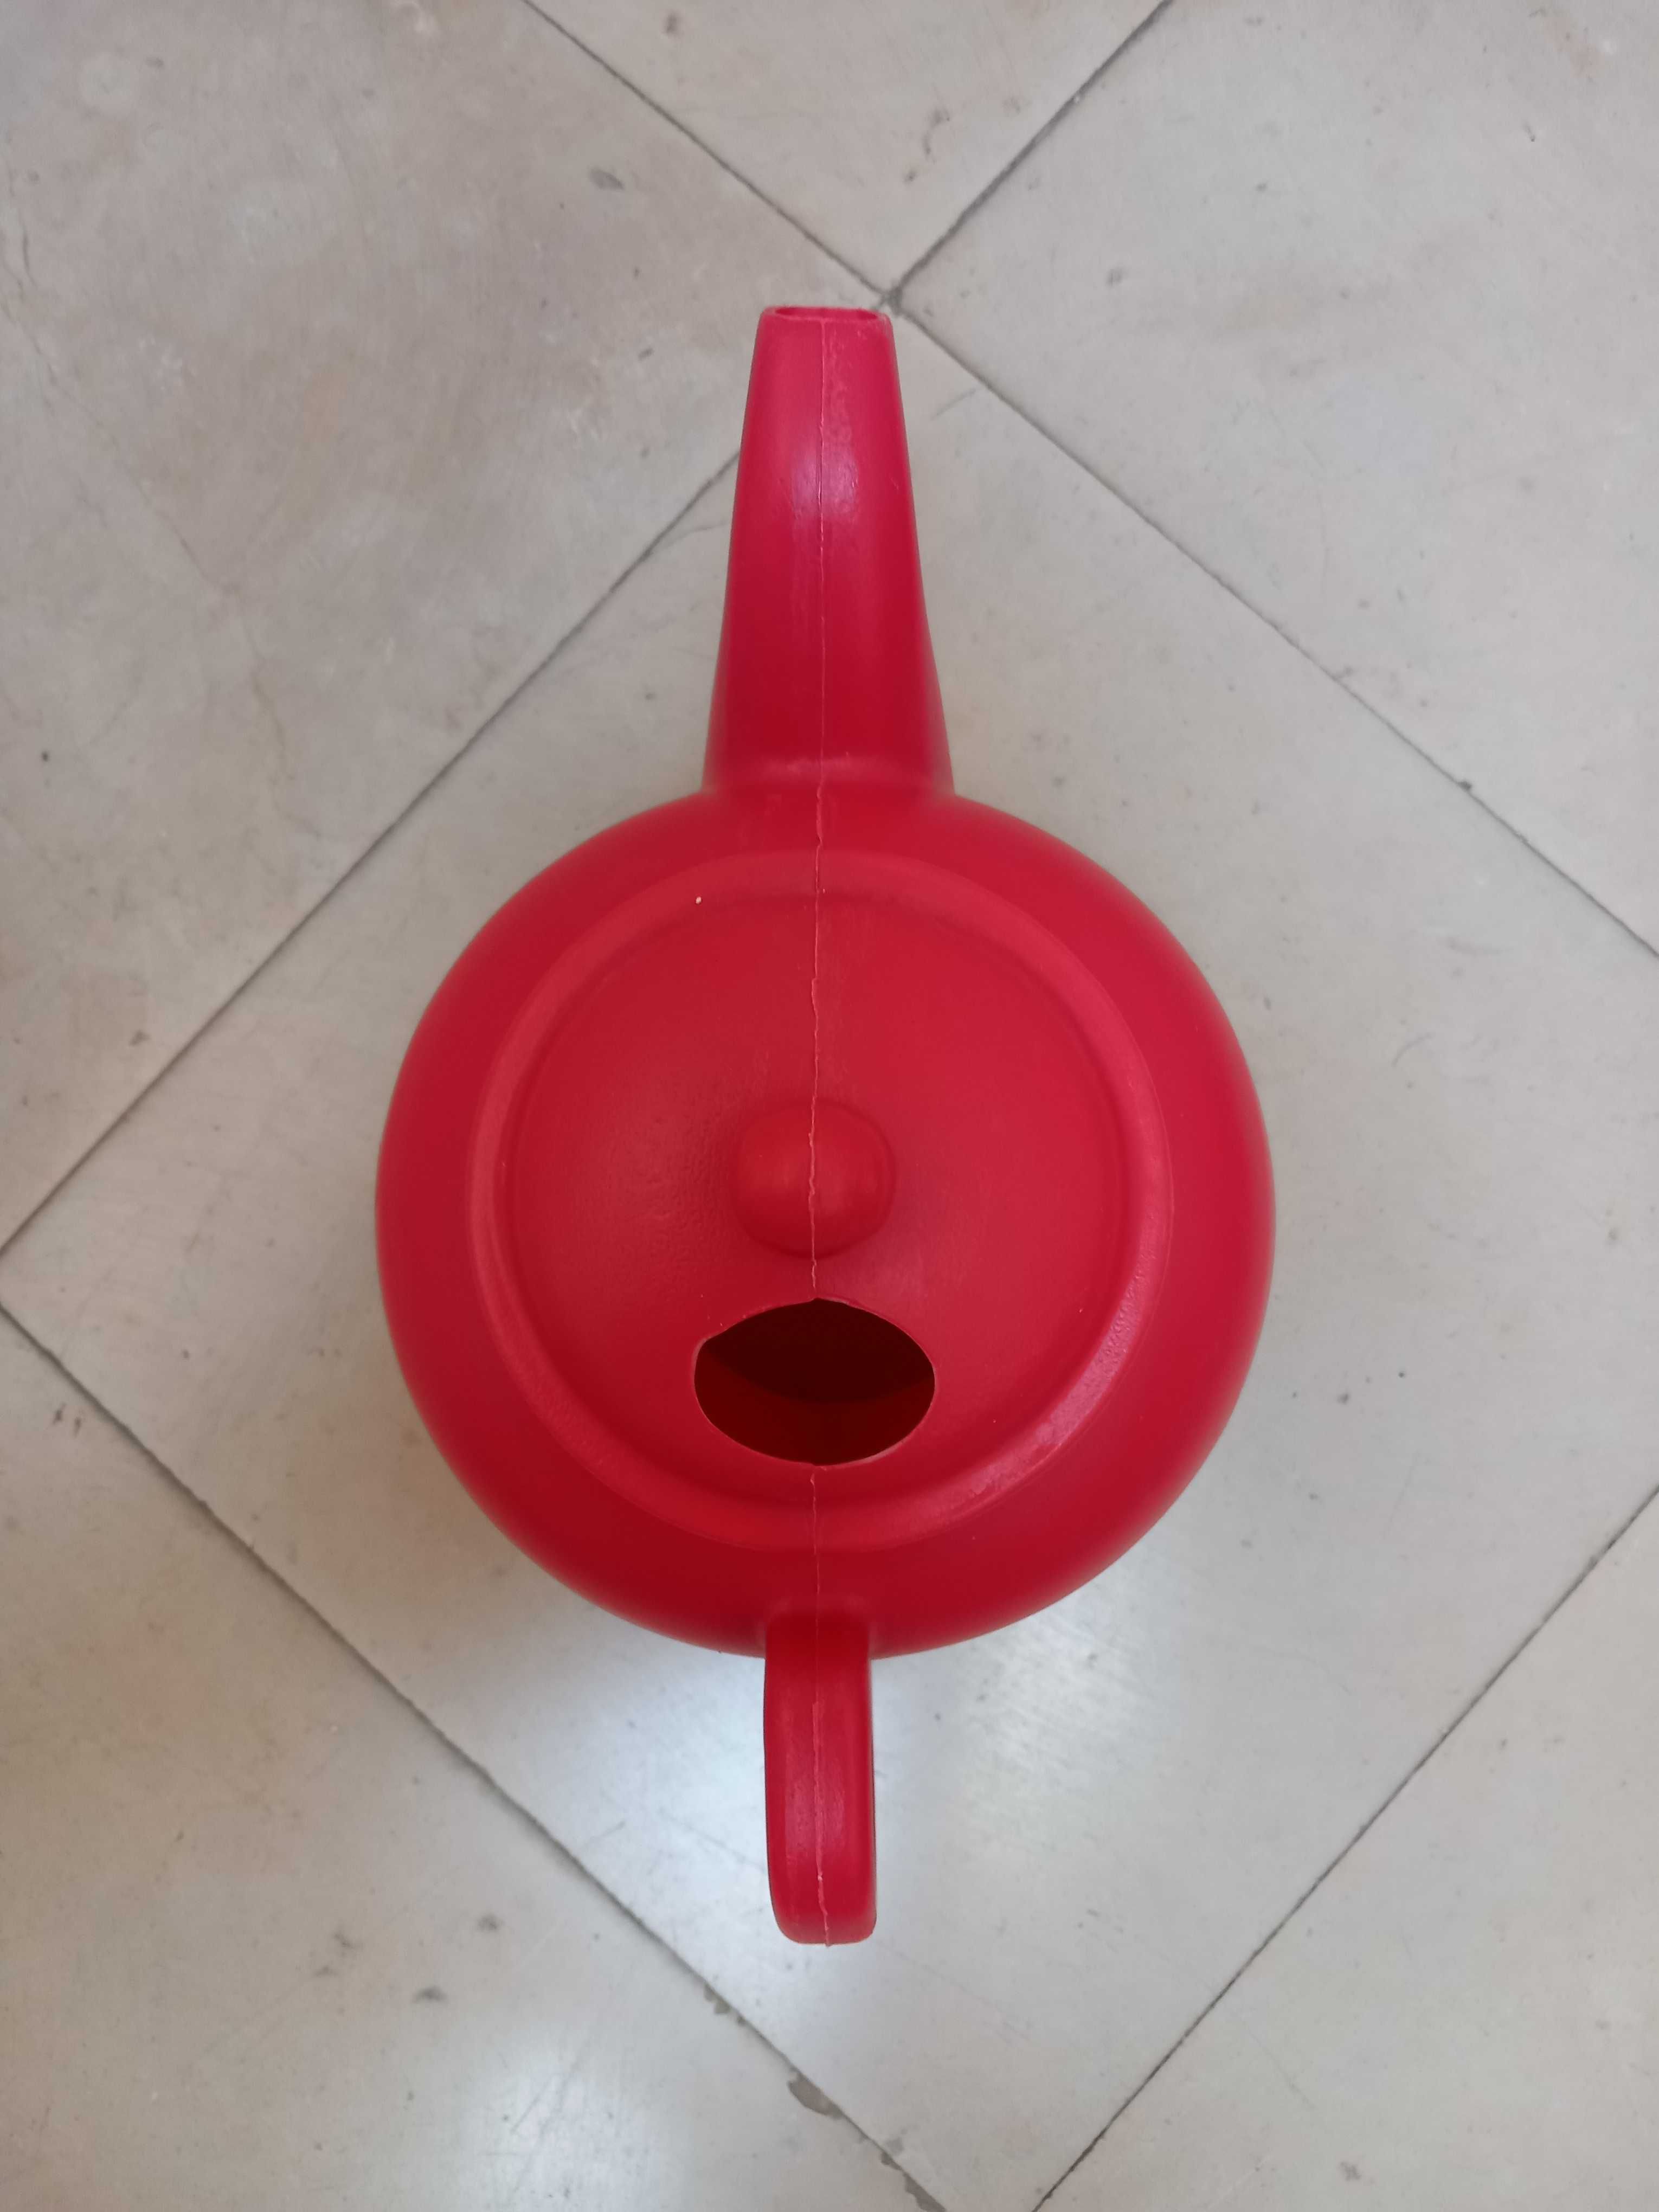 Regador original forma bule em plástico vermelho cap. 1,5 l